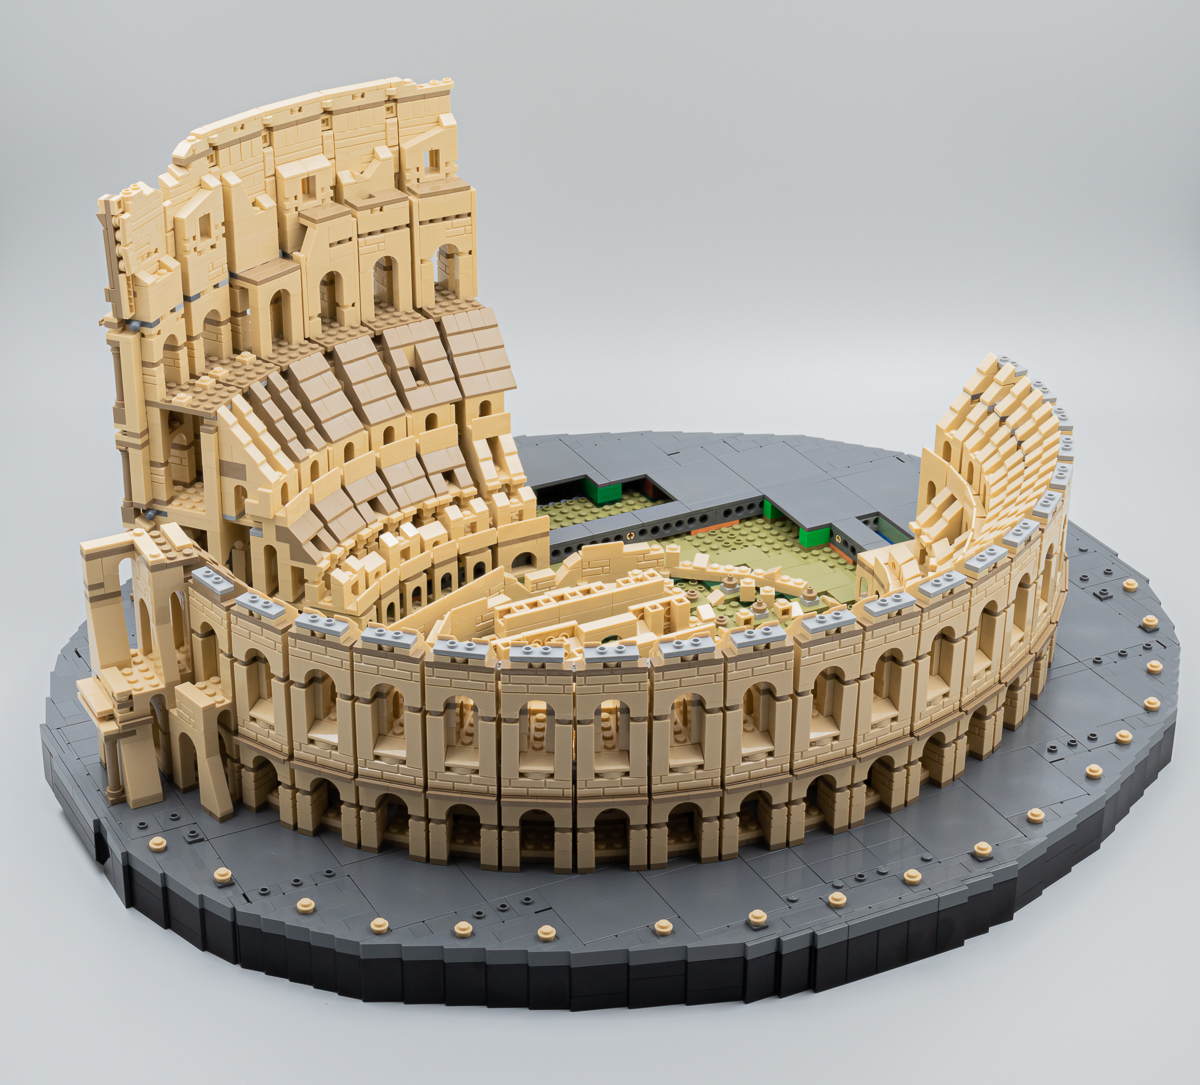 ▻ Testato rapidamente: LEGO 10276 Colosseo (Il Colosseo) - HOTH BRICKS